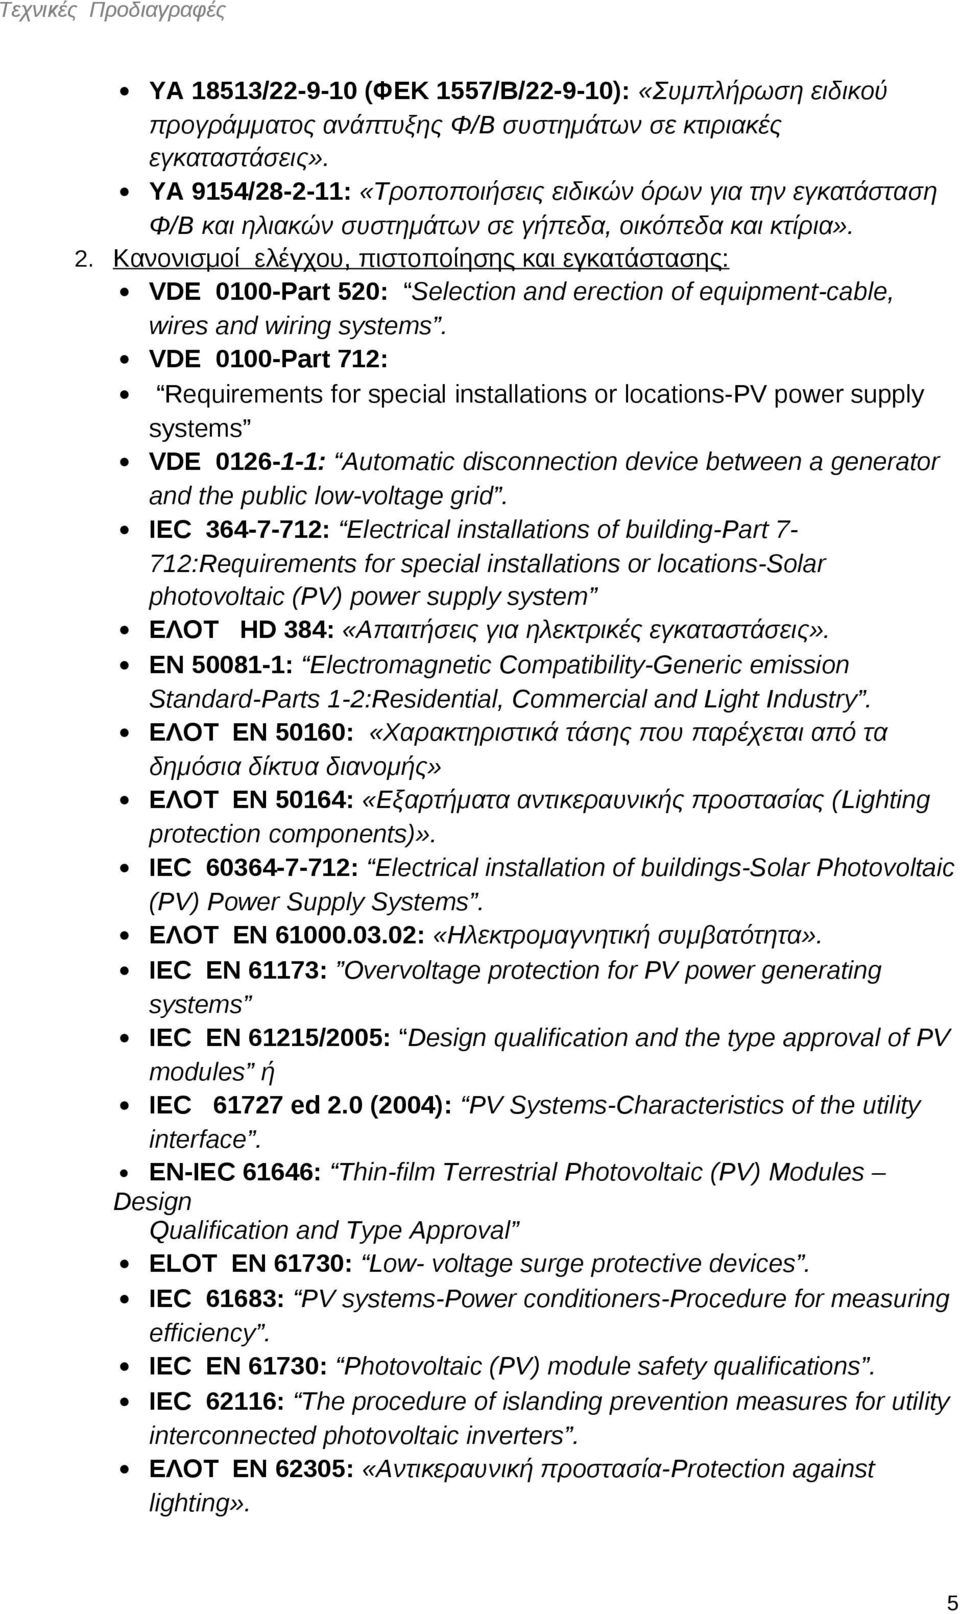 Κανονισμοί ελέγχου, πιστοποίησης και εγκατάστασης: VDE 0100-Part 520: Selection and erection of equipment-cable, wires and wiring systems.